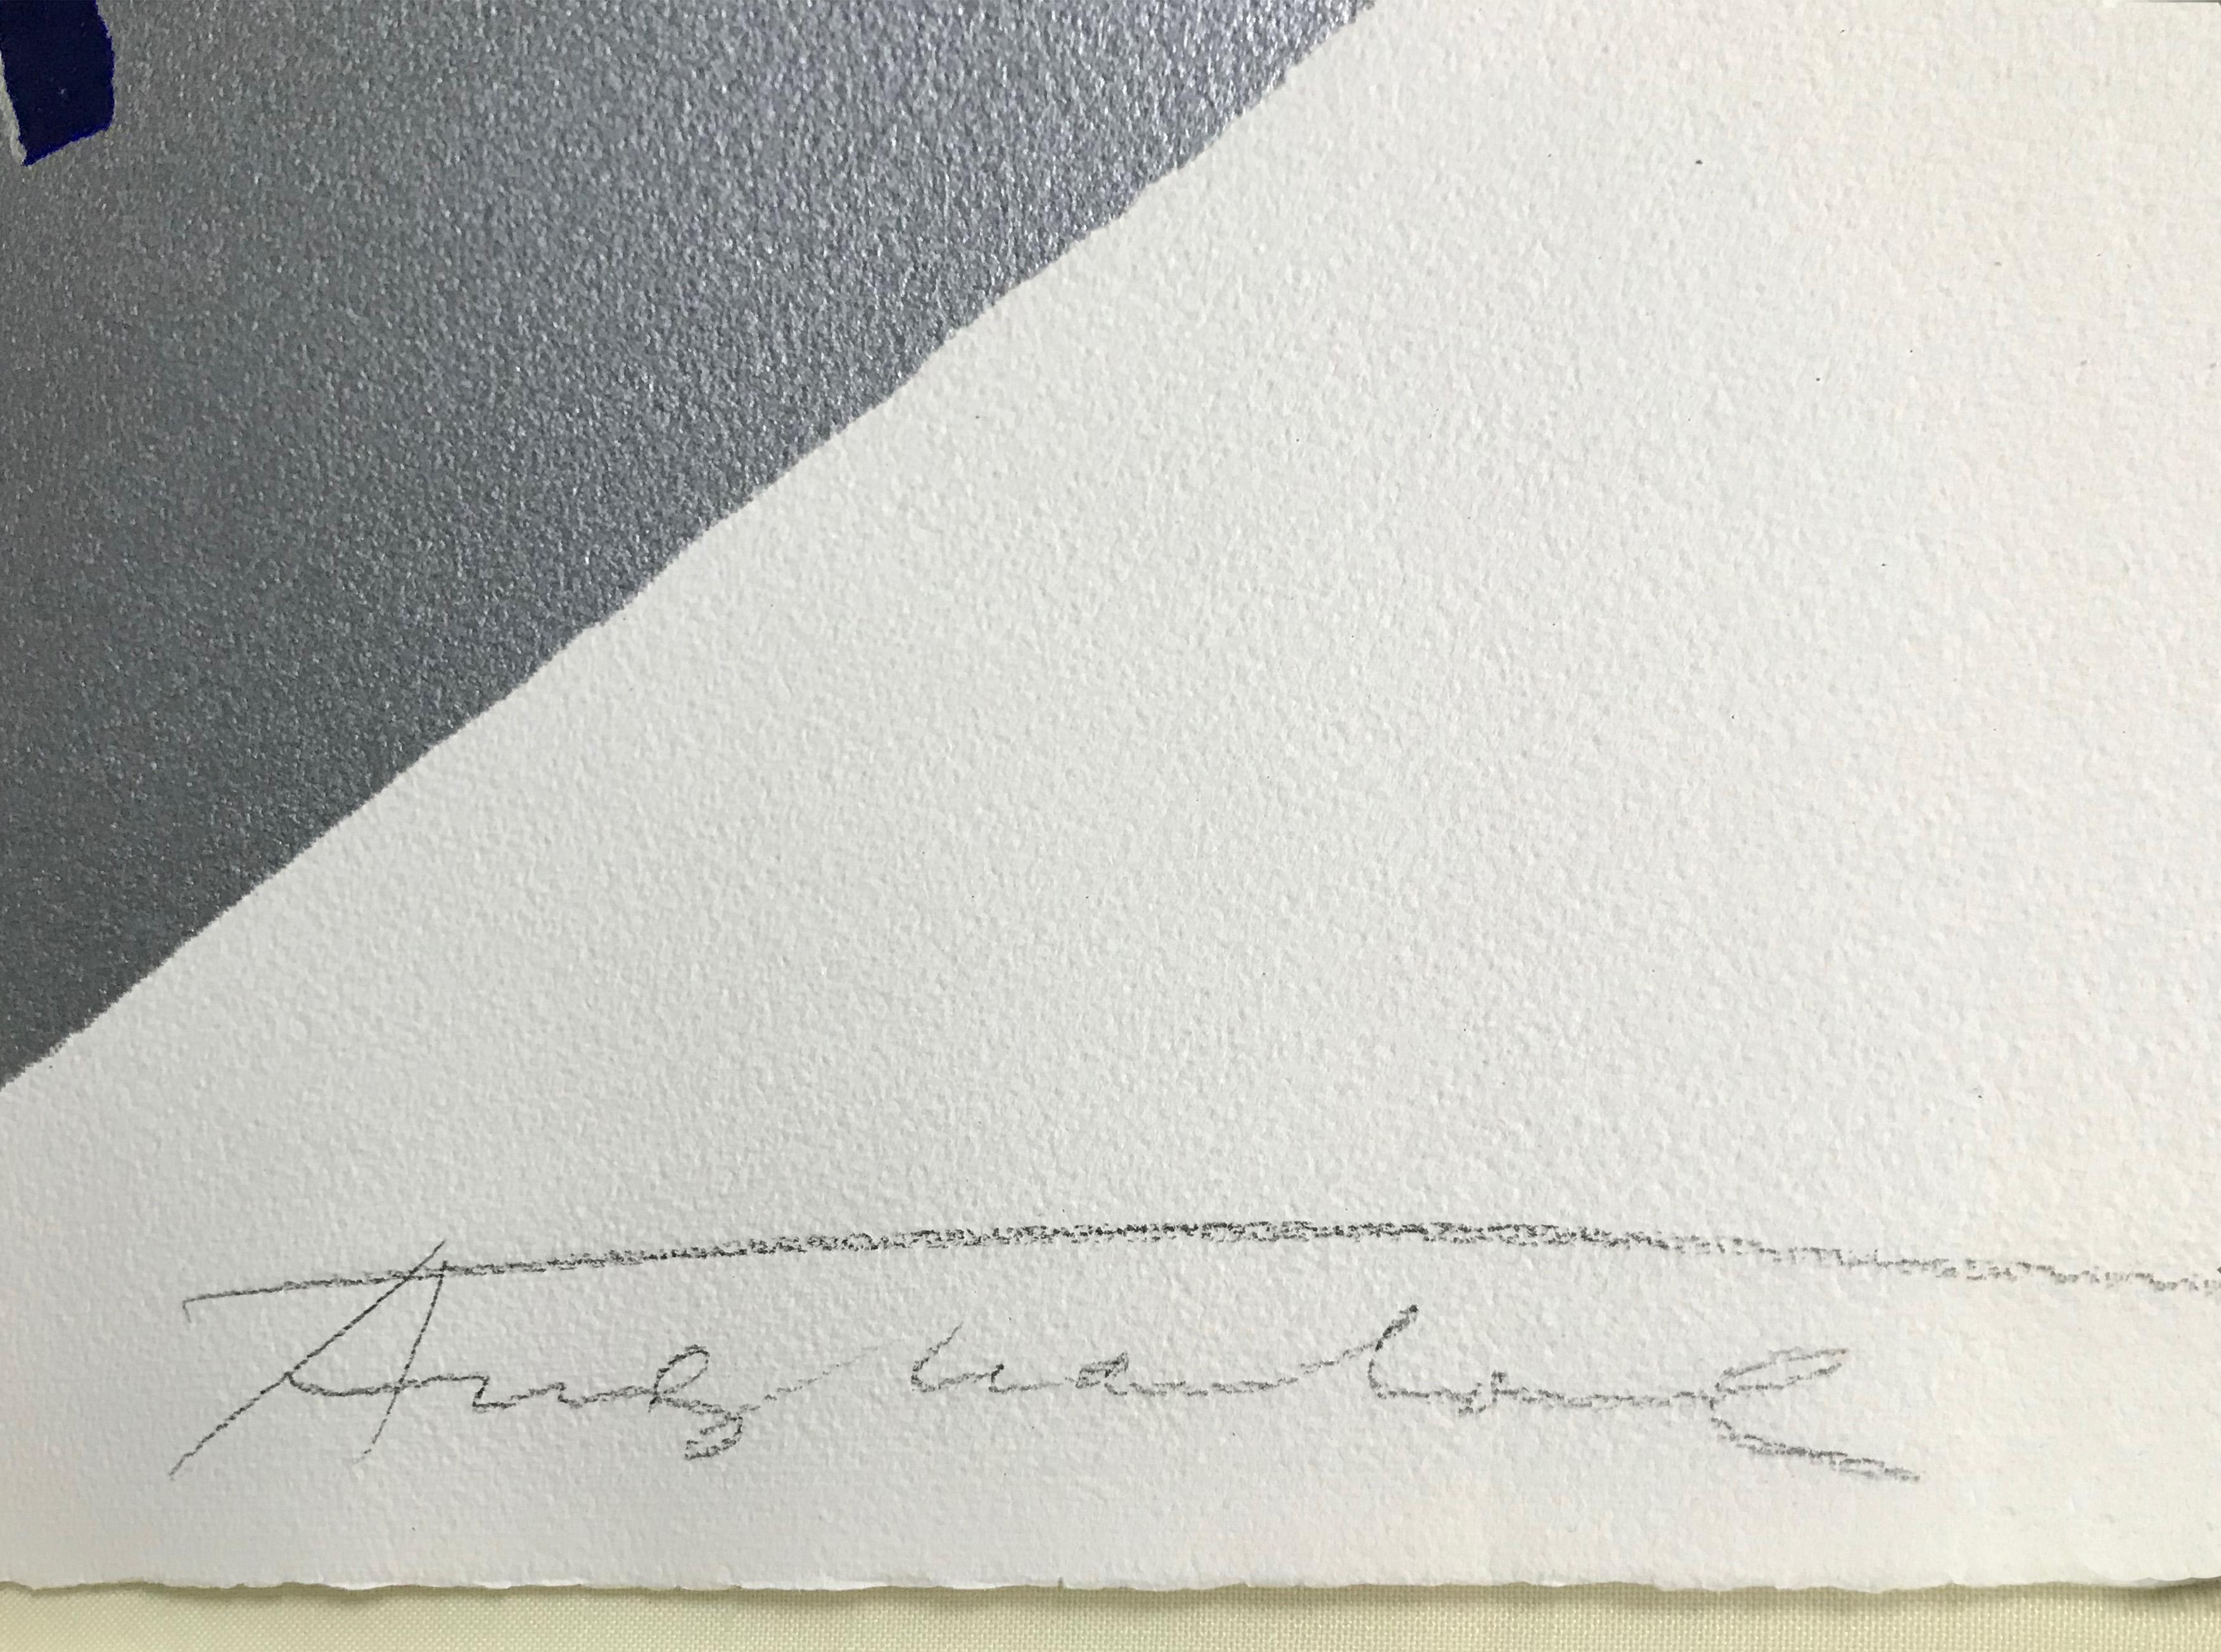 JAGGER FS II.142, MICK (Beige), Portrait Print, von Andy Warhol